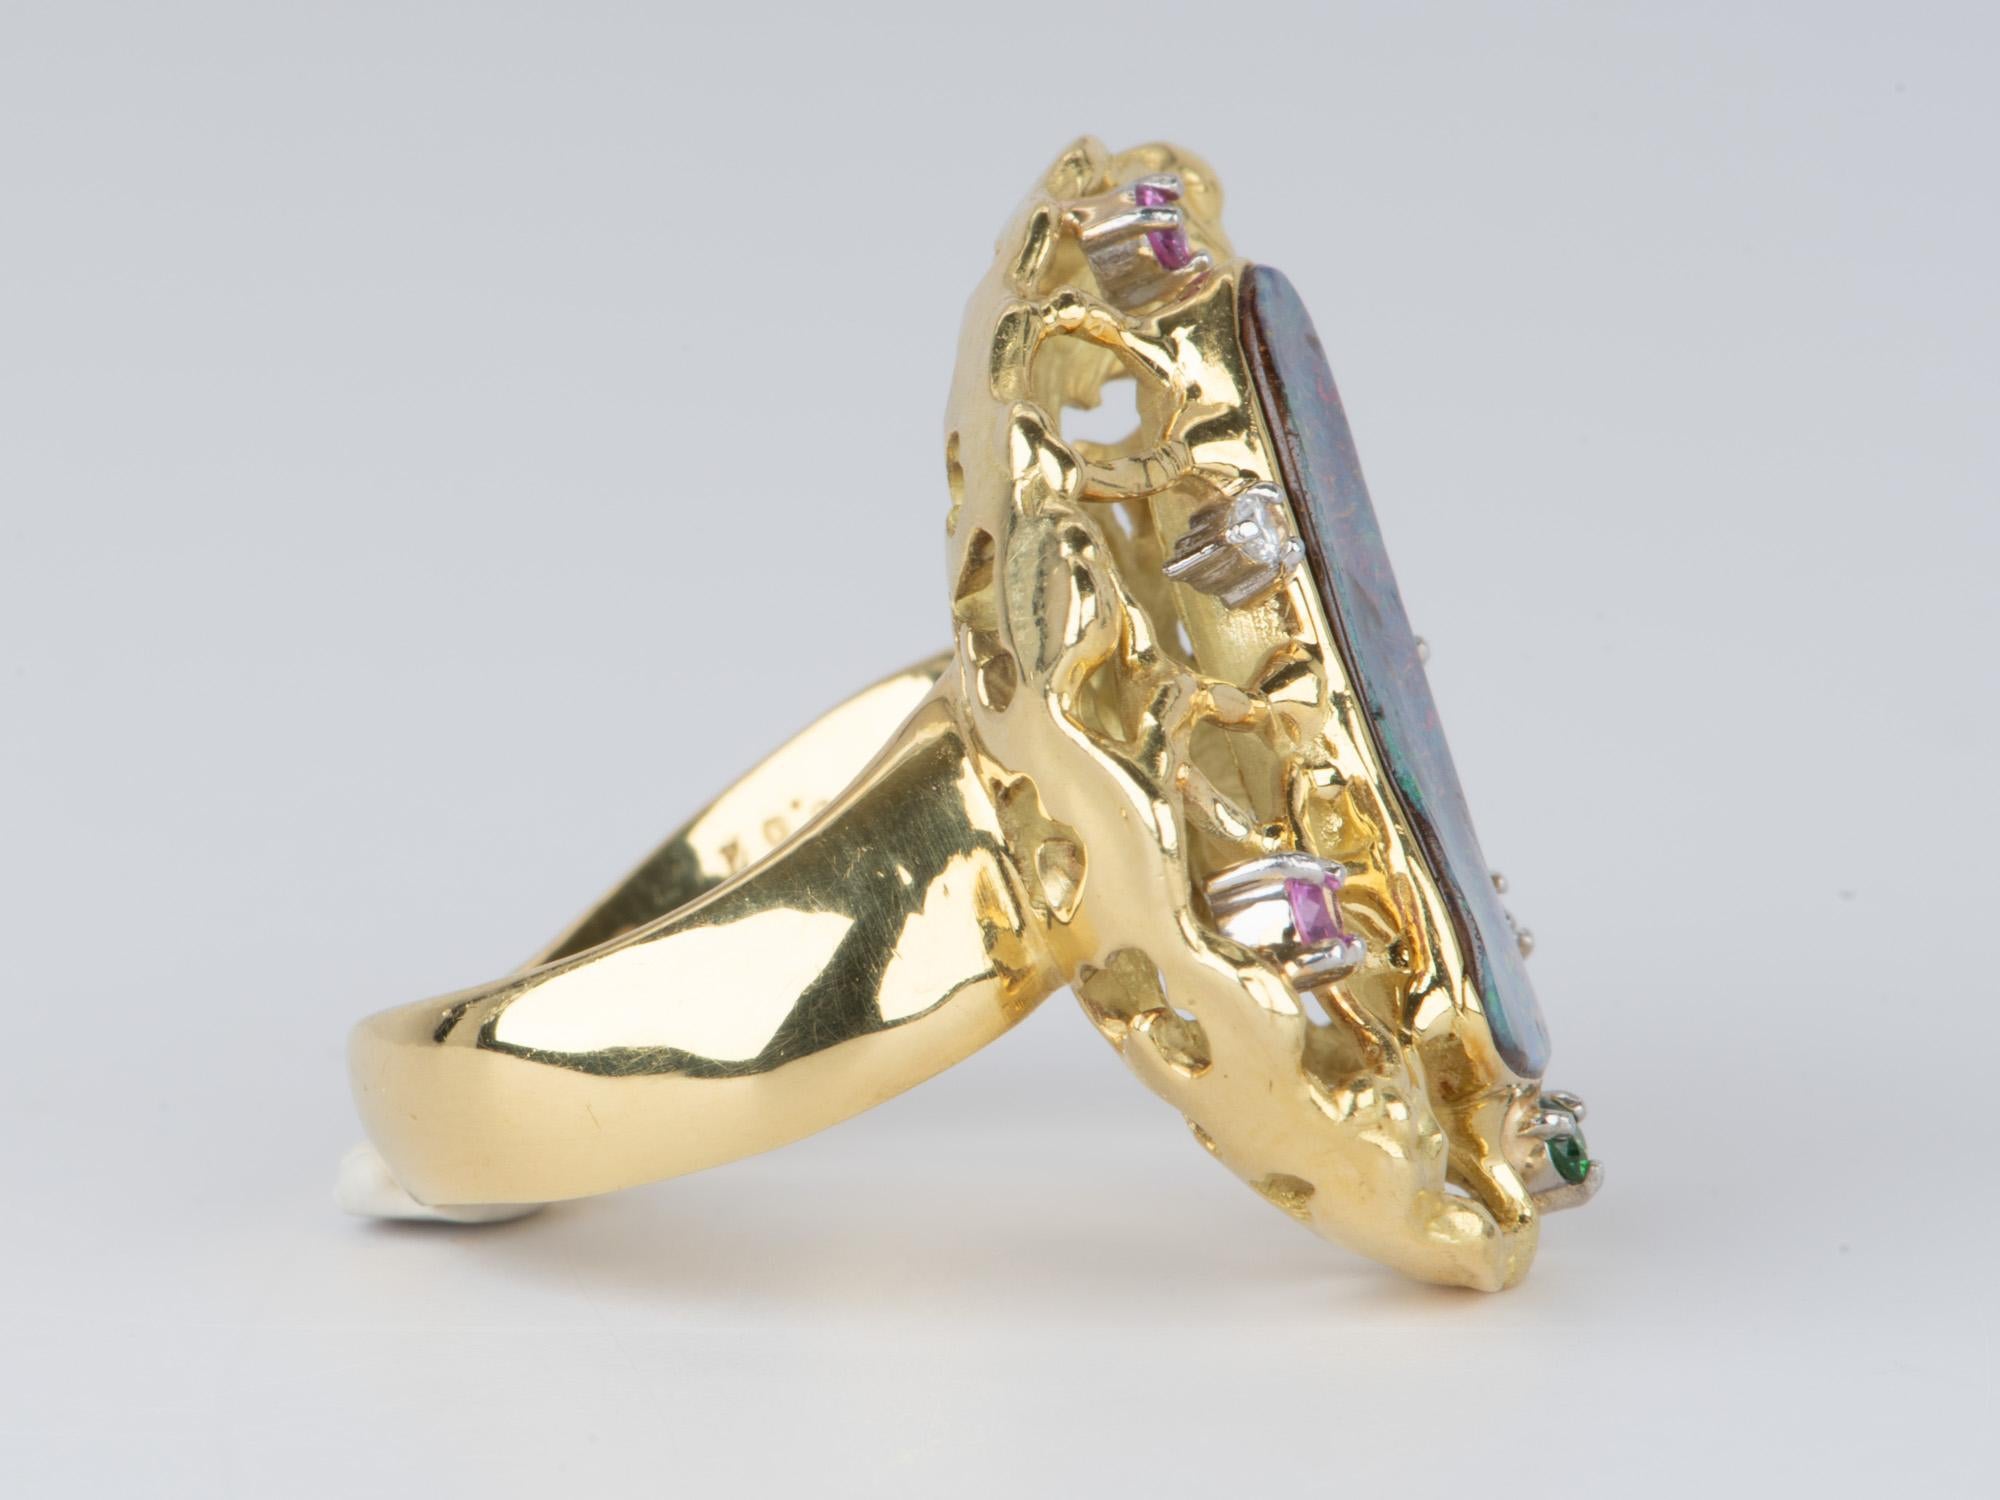 Uncut Australian Boulder Opal Modernist Design Statement Ring 18K Gold 14.2g V1112 For Sale